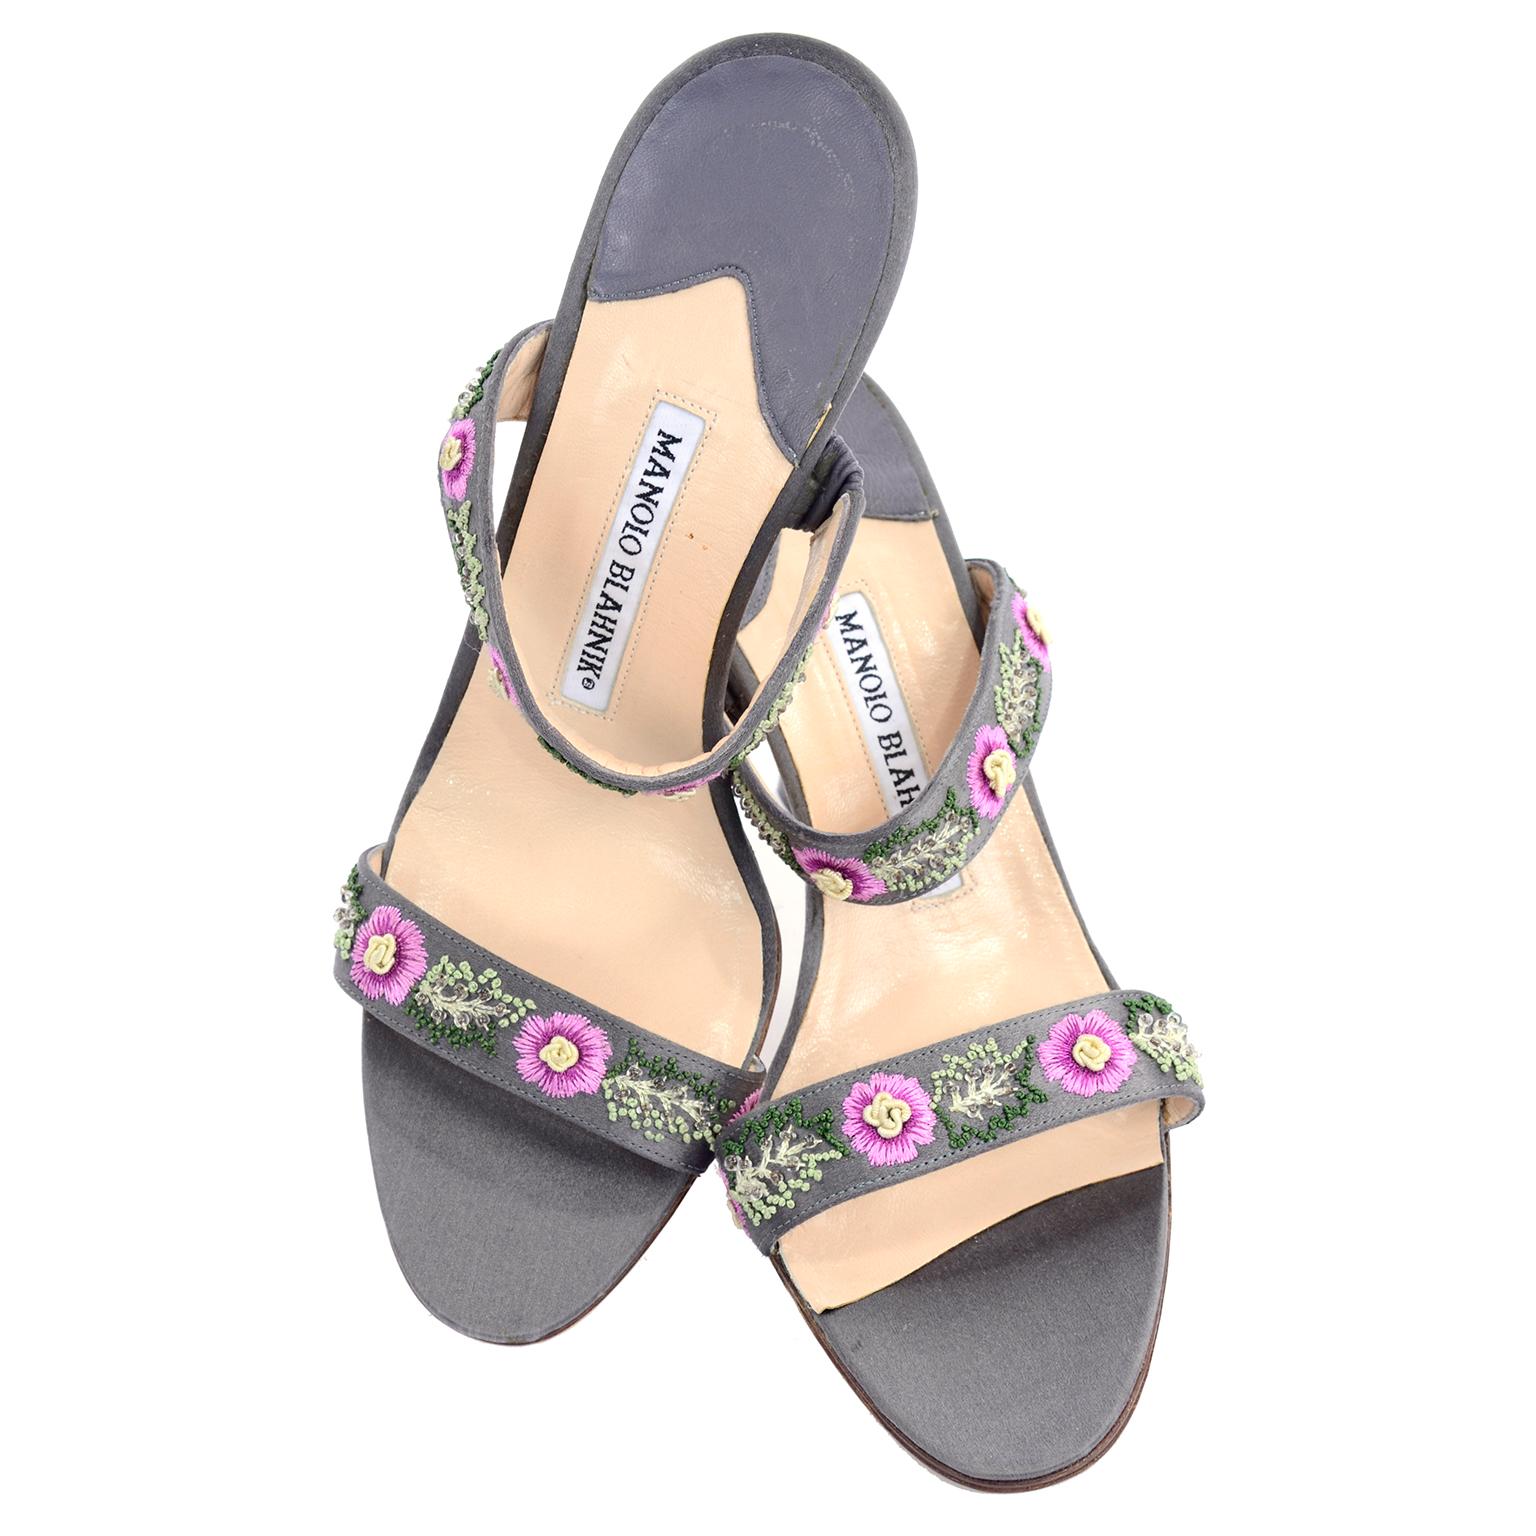 Diese hübschen grauen Manolo Blahnik Schuhe haben wunderschöne gestickte rosa Blumen mit cremefarbener Mitte und gestickte grüne Blätter, die mit Perlen verziert sind.  Diese zehenoffenen Slide-Sandalen haben schöne Absätze und wurden nur einmal